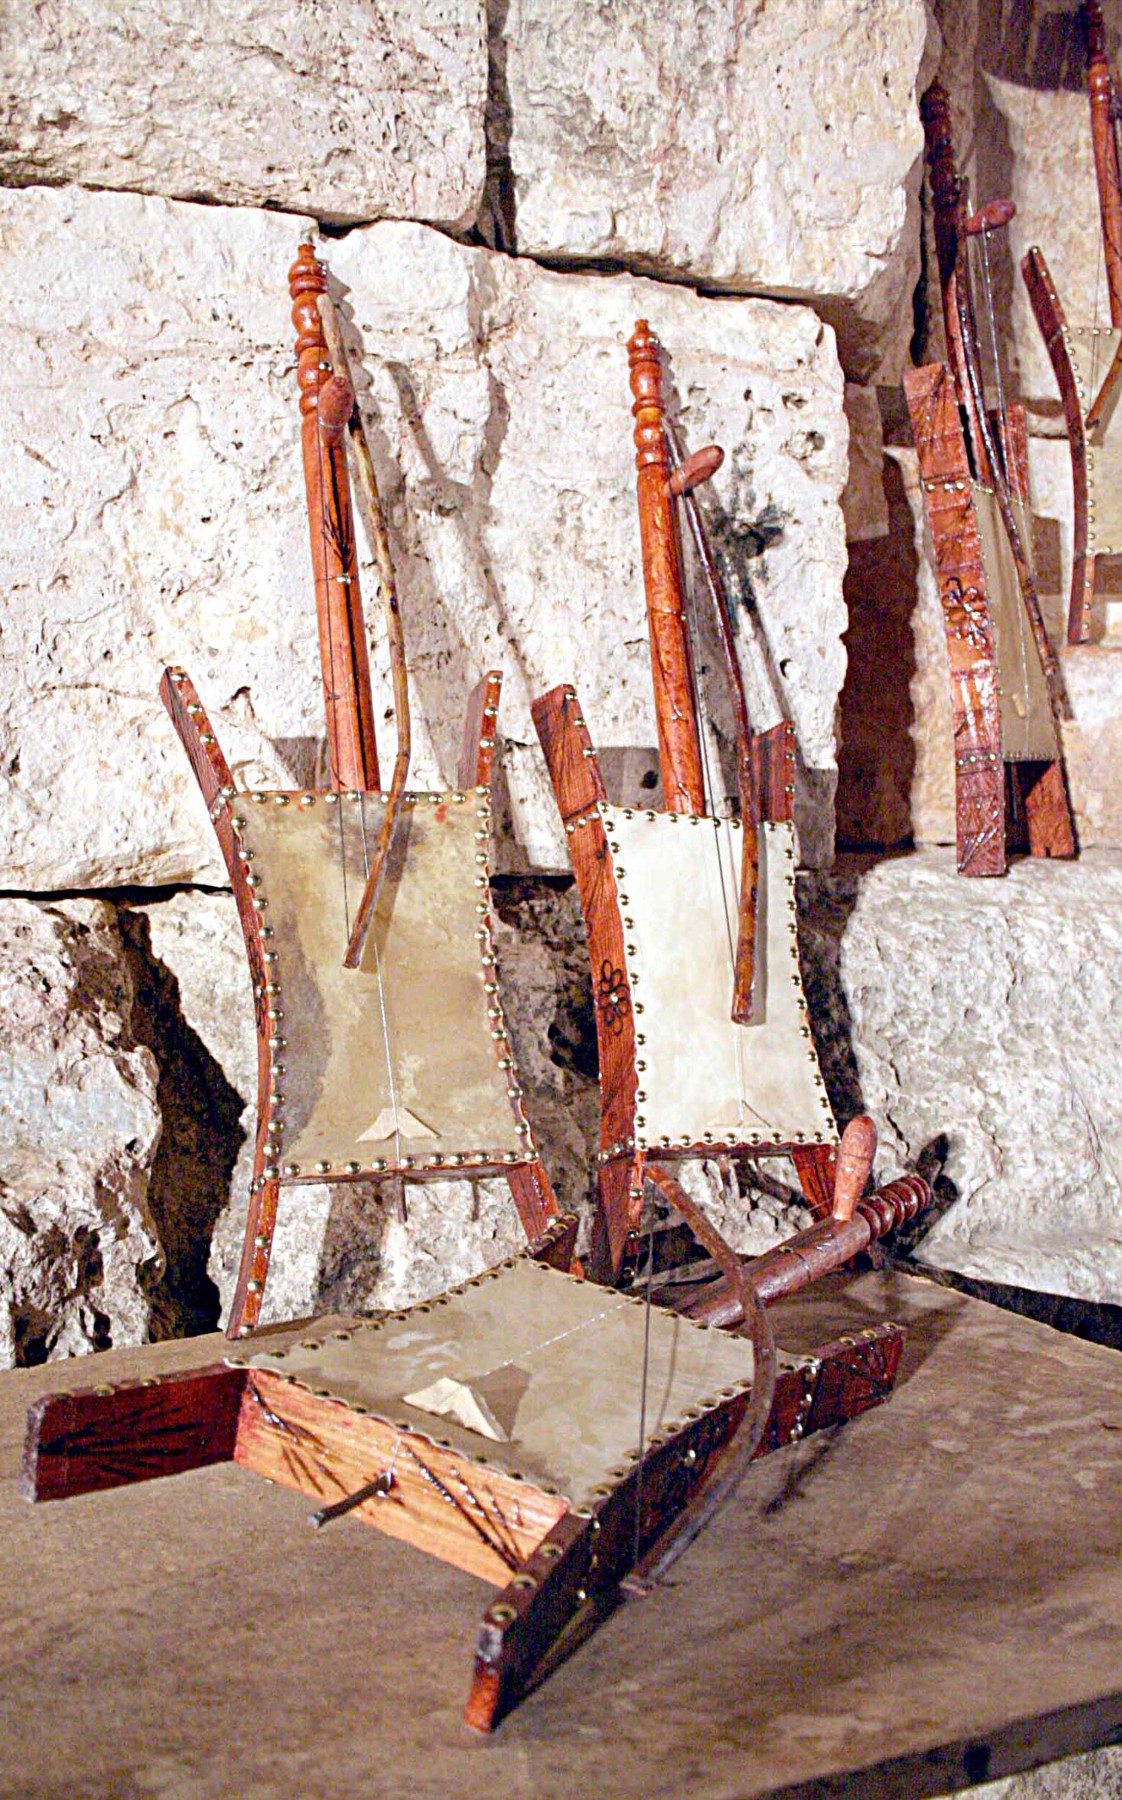 آلة العزف الوترية (الربابة) من الأدوات الموسيقية التي استخدمها واشتهر بها أهل البادية العربية منذ قرون